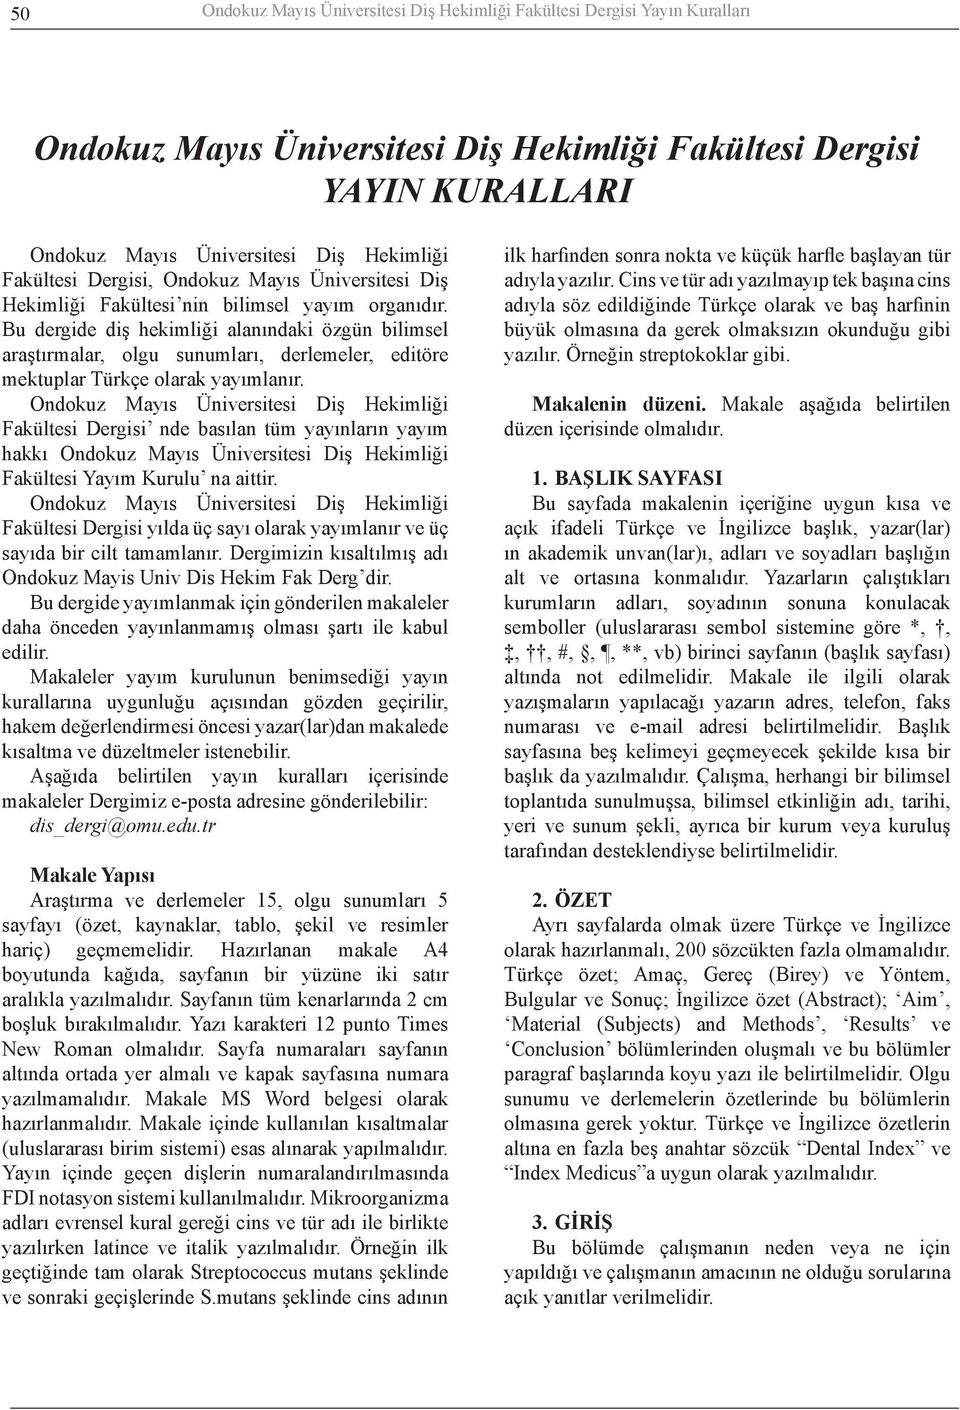 Bu dergide diş hekimliği alanındaki özgün bilimsel araştırmalar, olgu sunumları, derlemeler, editöre mektuplar Türkçe olarak yayımlanır.